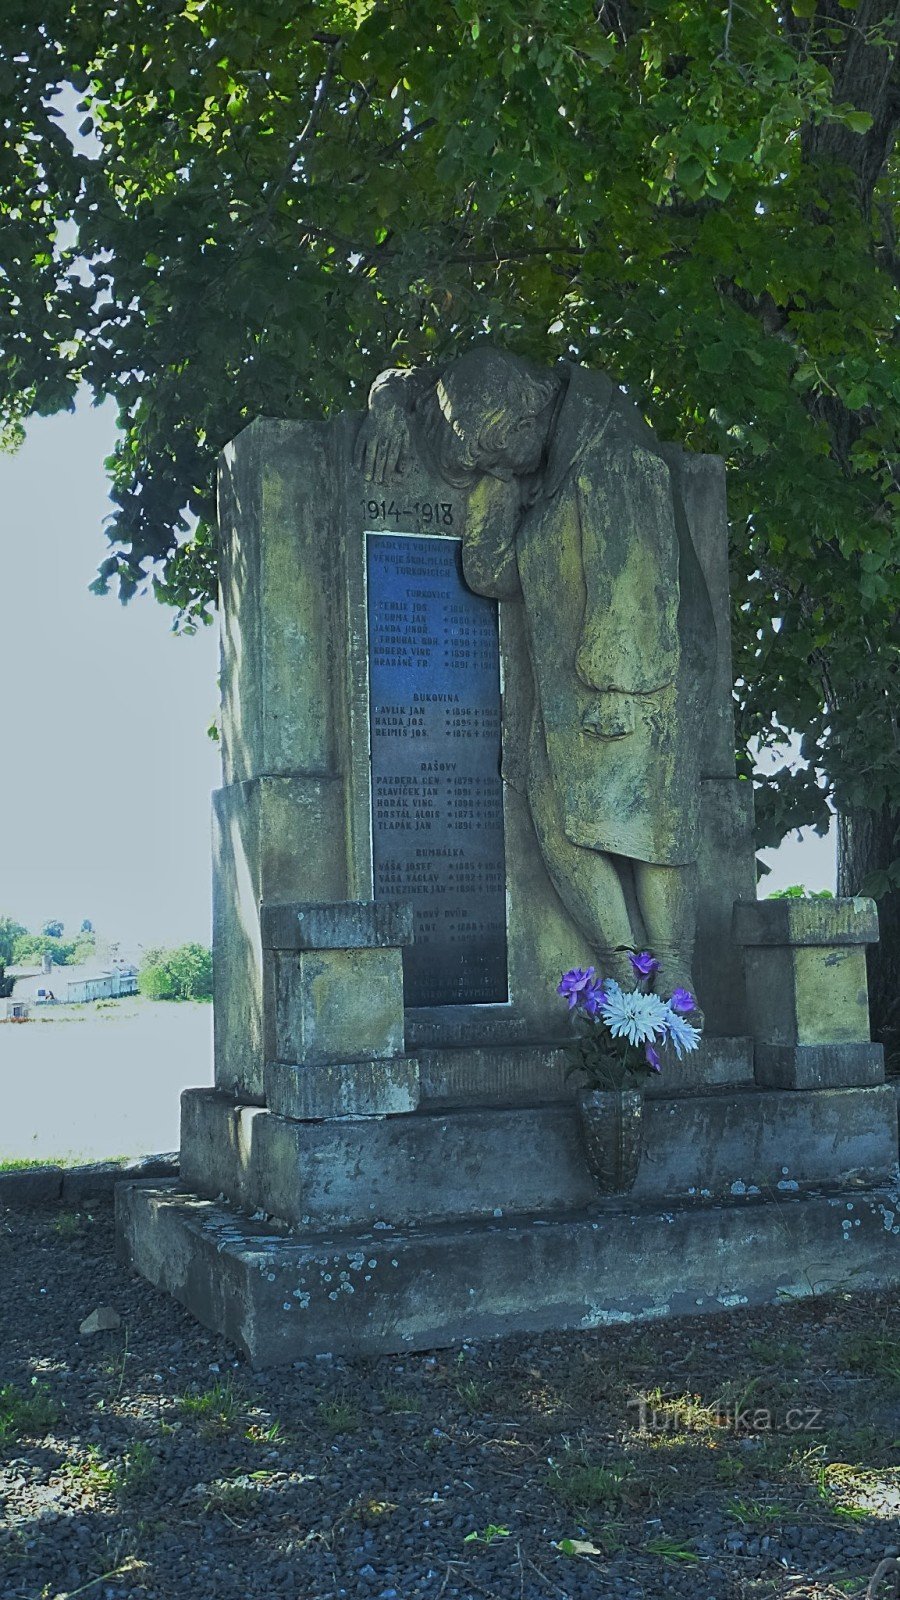 19 nombres de soldados caídos de los pueblos de los alrededores están grabados en el monumento